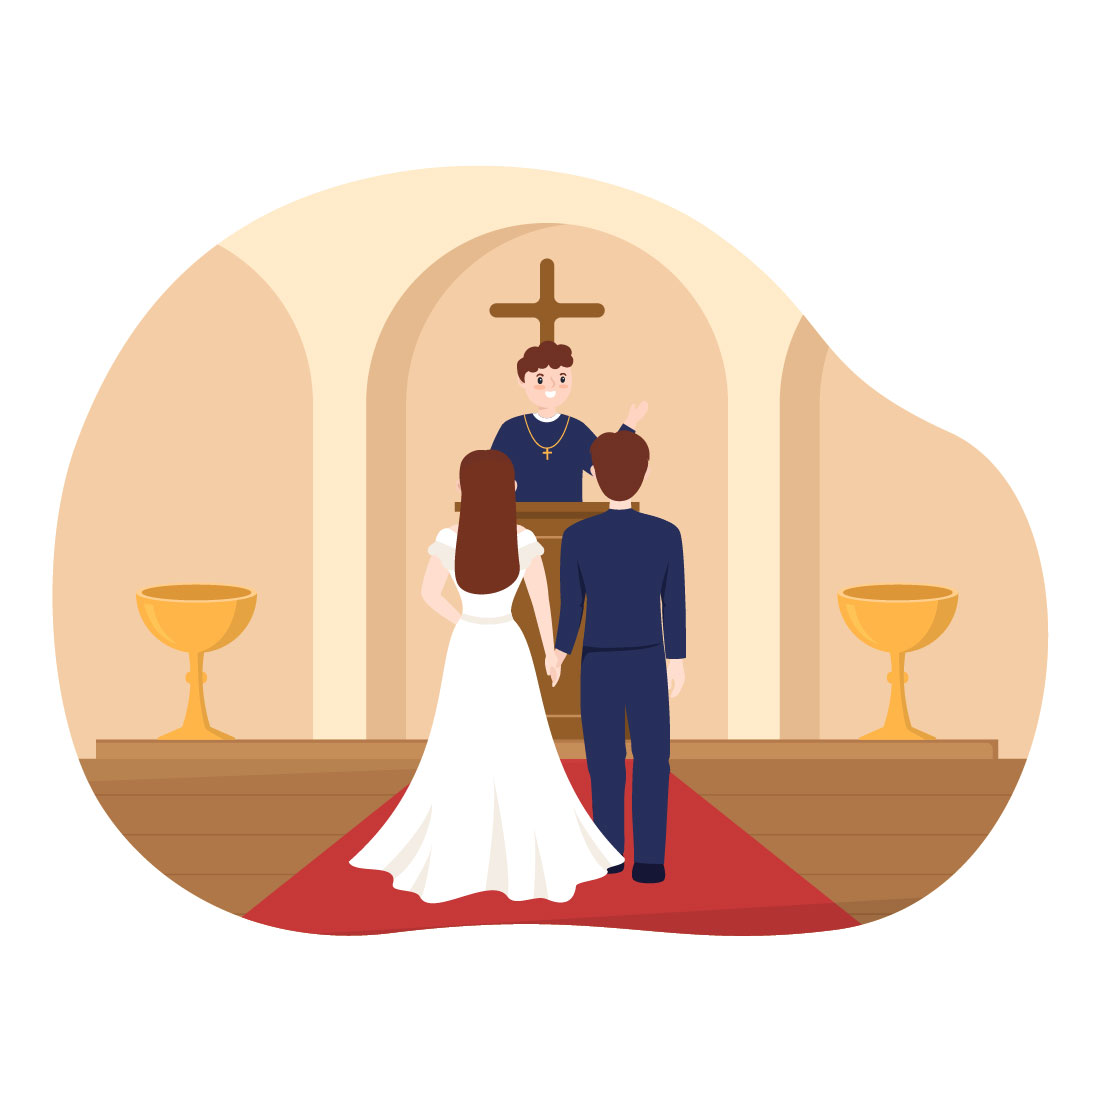 Catholic Church Illustration cover image.